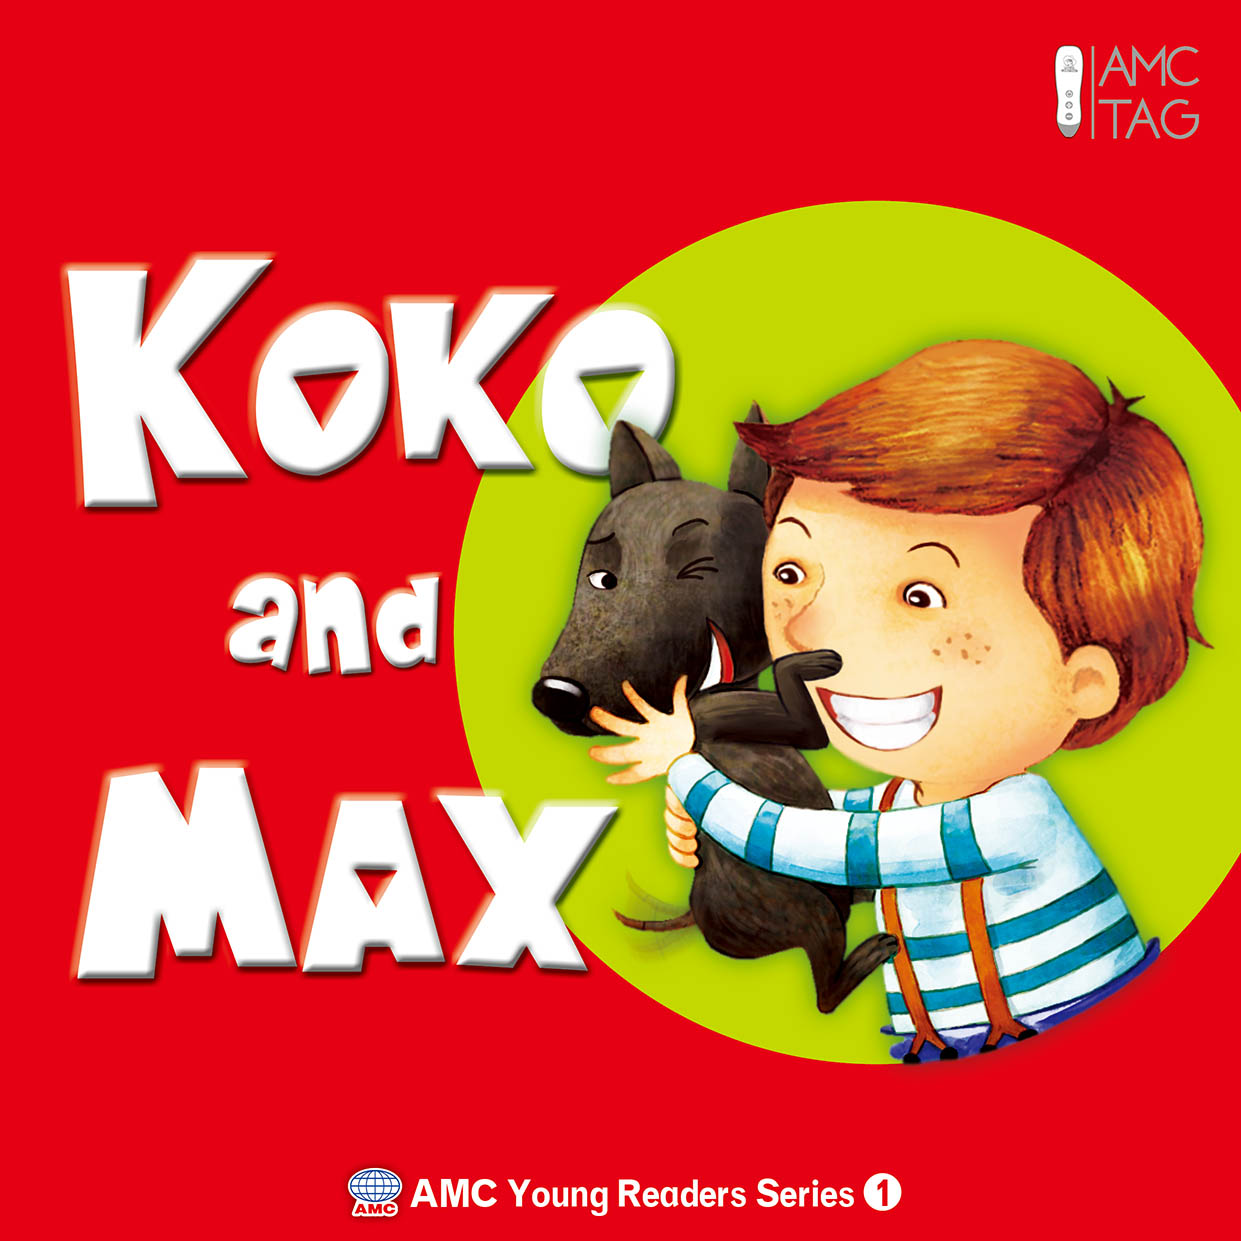 Koko and Max